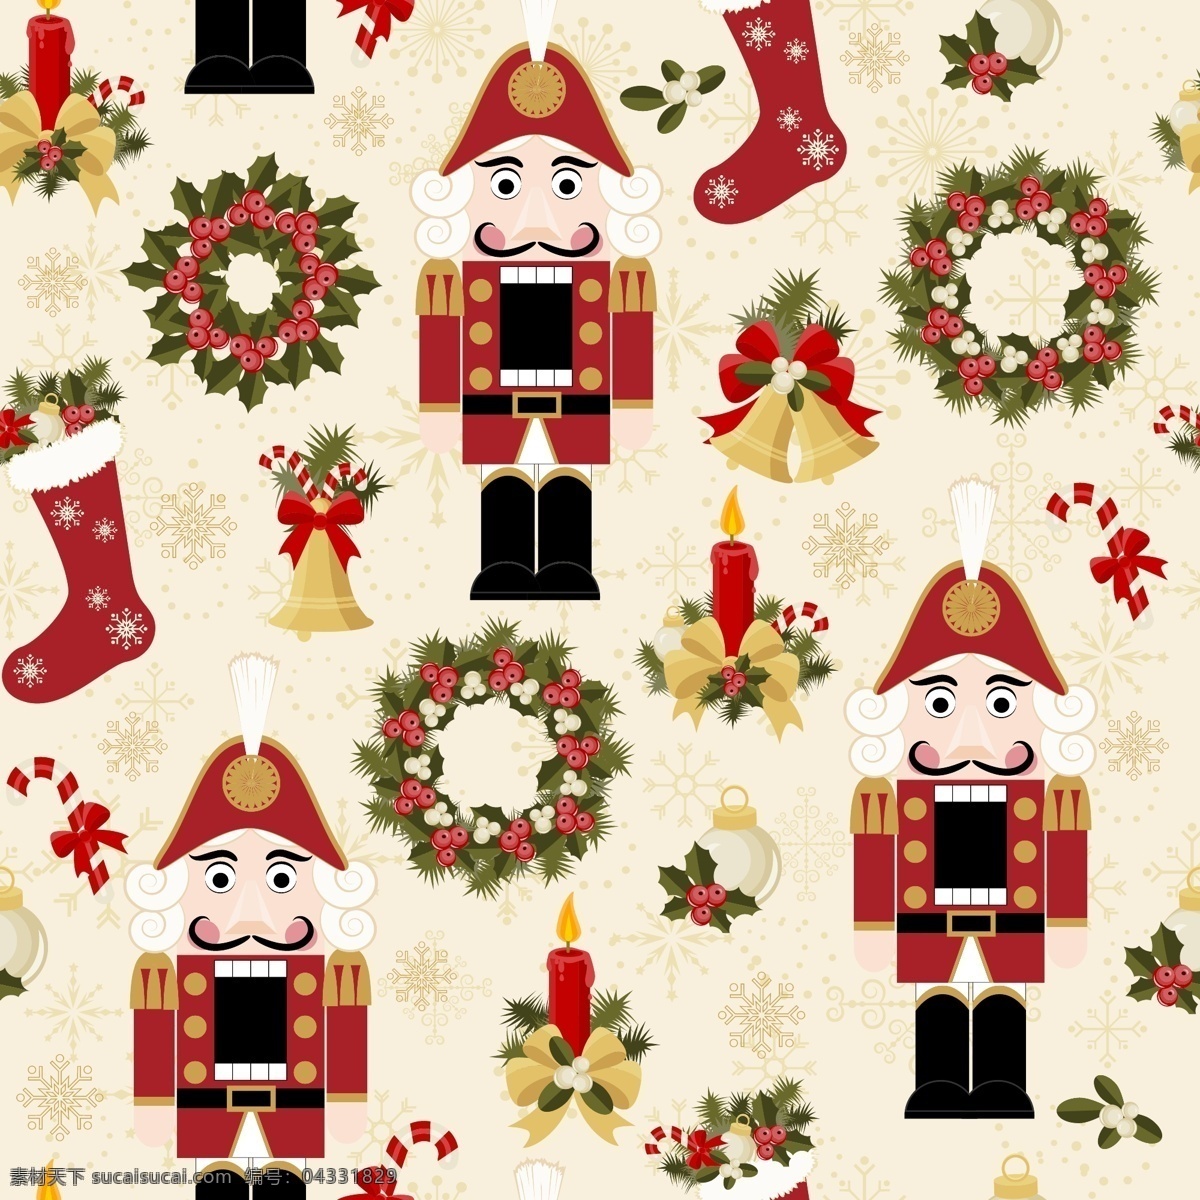 玩具 兵 圣诞节 矢量 背景 插画 花圈 卡通 可爱 铃铛 圣诞 矢量素材 袜子 小人 节日素材